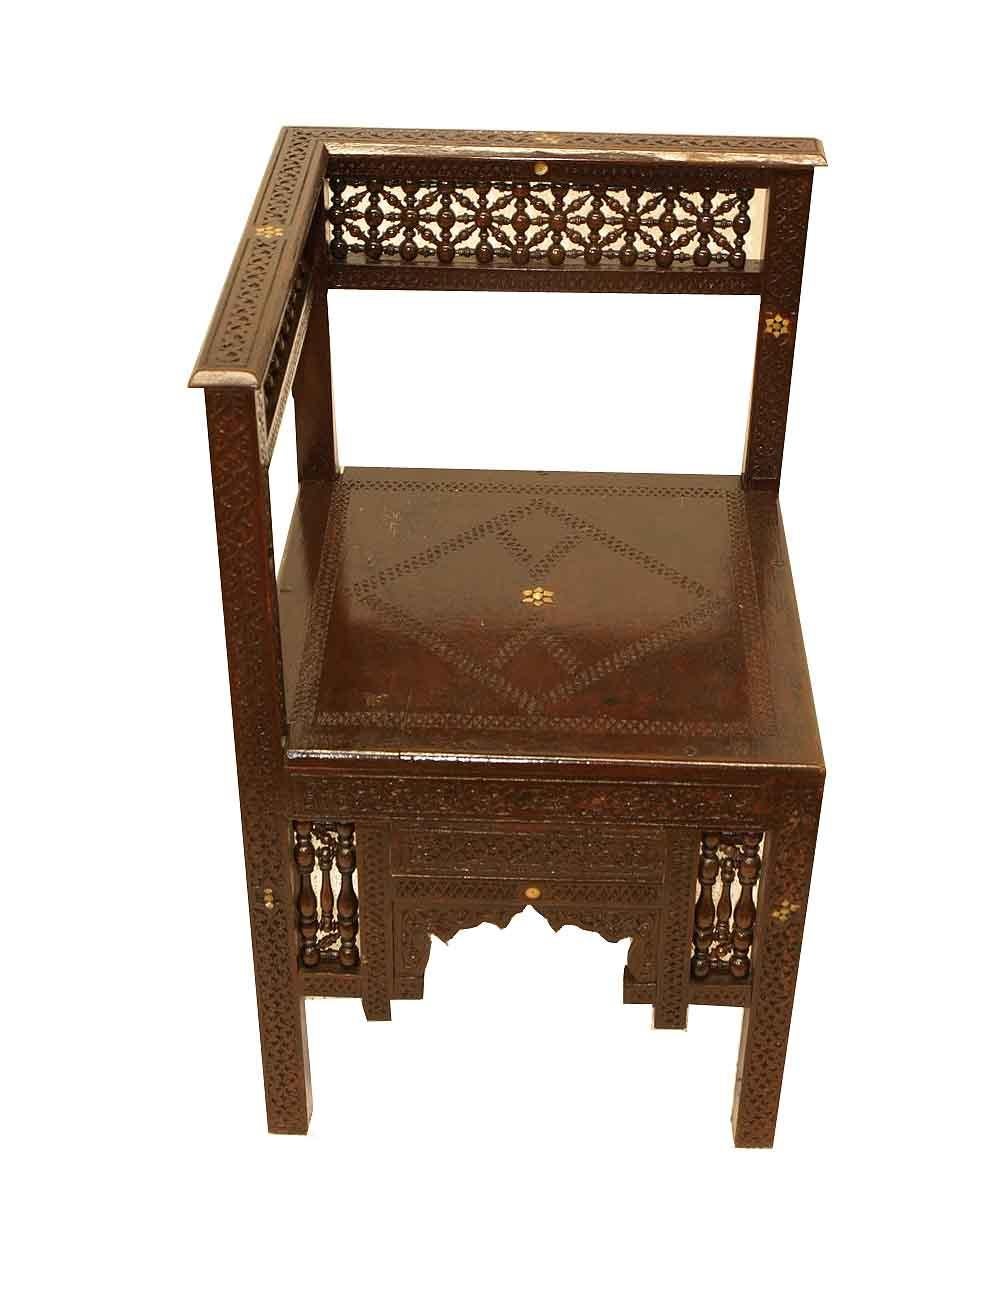 Geschnitzter marokkanischer Eckstuhl, die geschnitzte Kammleiste mit eingelegten stilisierten Perlmuttsternen über der Rückenlehne mit einer Vielzahl von miteinander verbundenen gedrechselten kleinen Spindeln. Alle vier Seiten des Stuhls und des